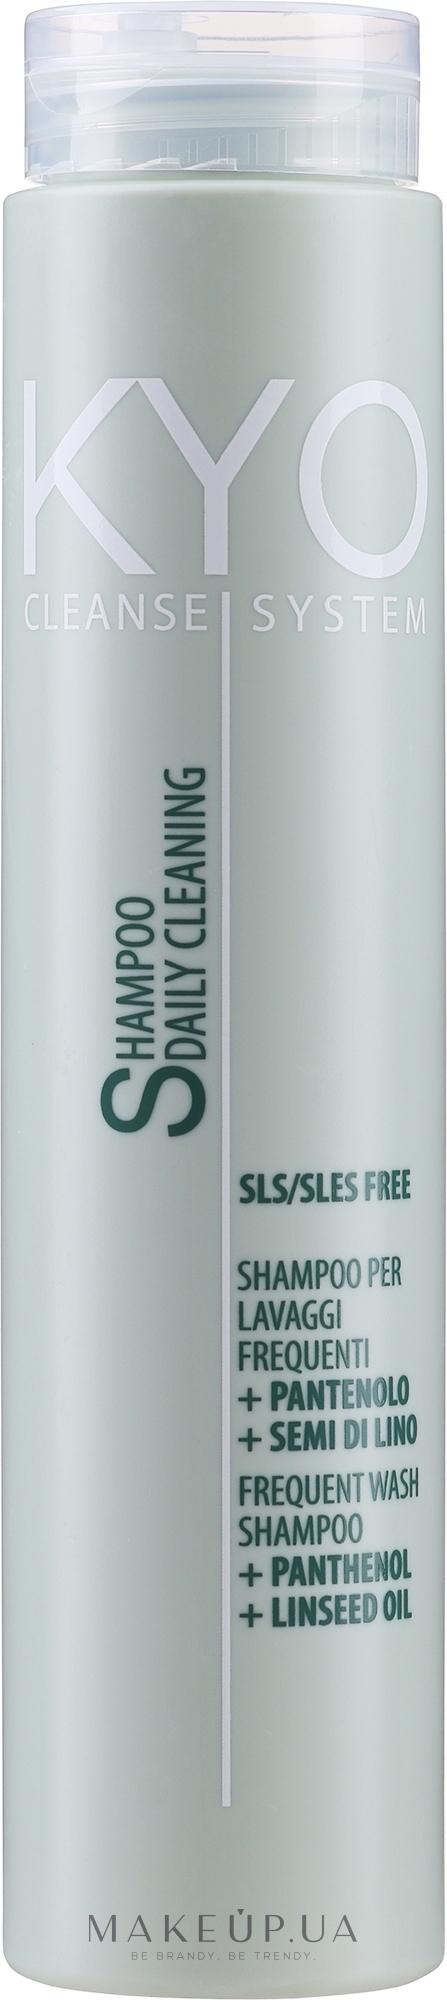 Шампунь для частого використання - Kyo Cleanse System Frequent Wash Shampoo — фото 250ml